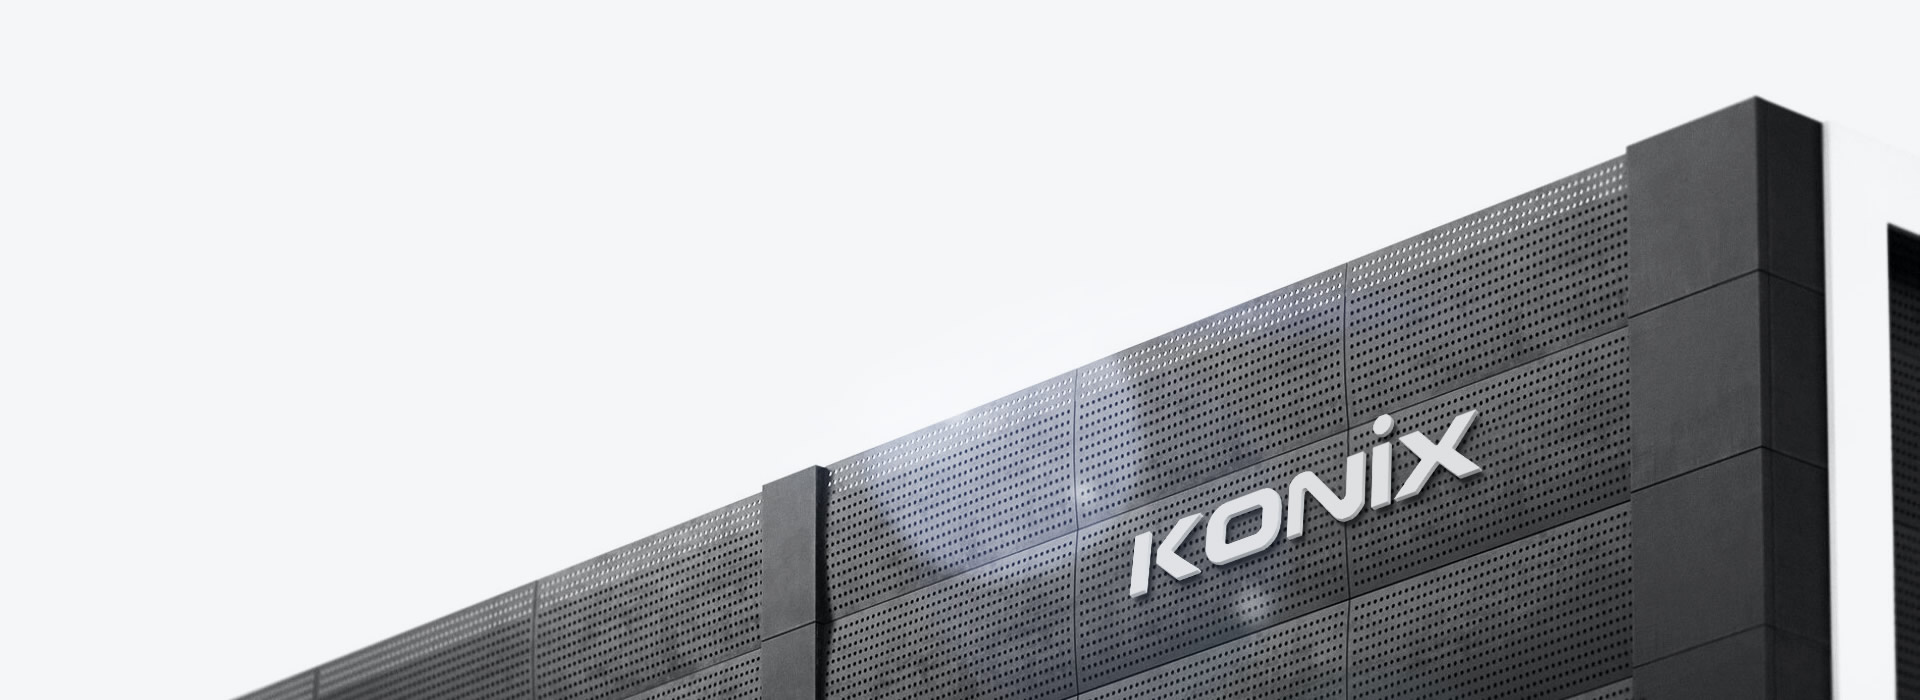 konix technology